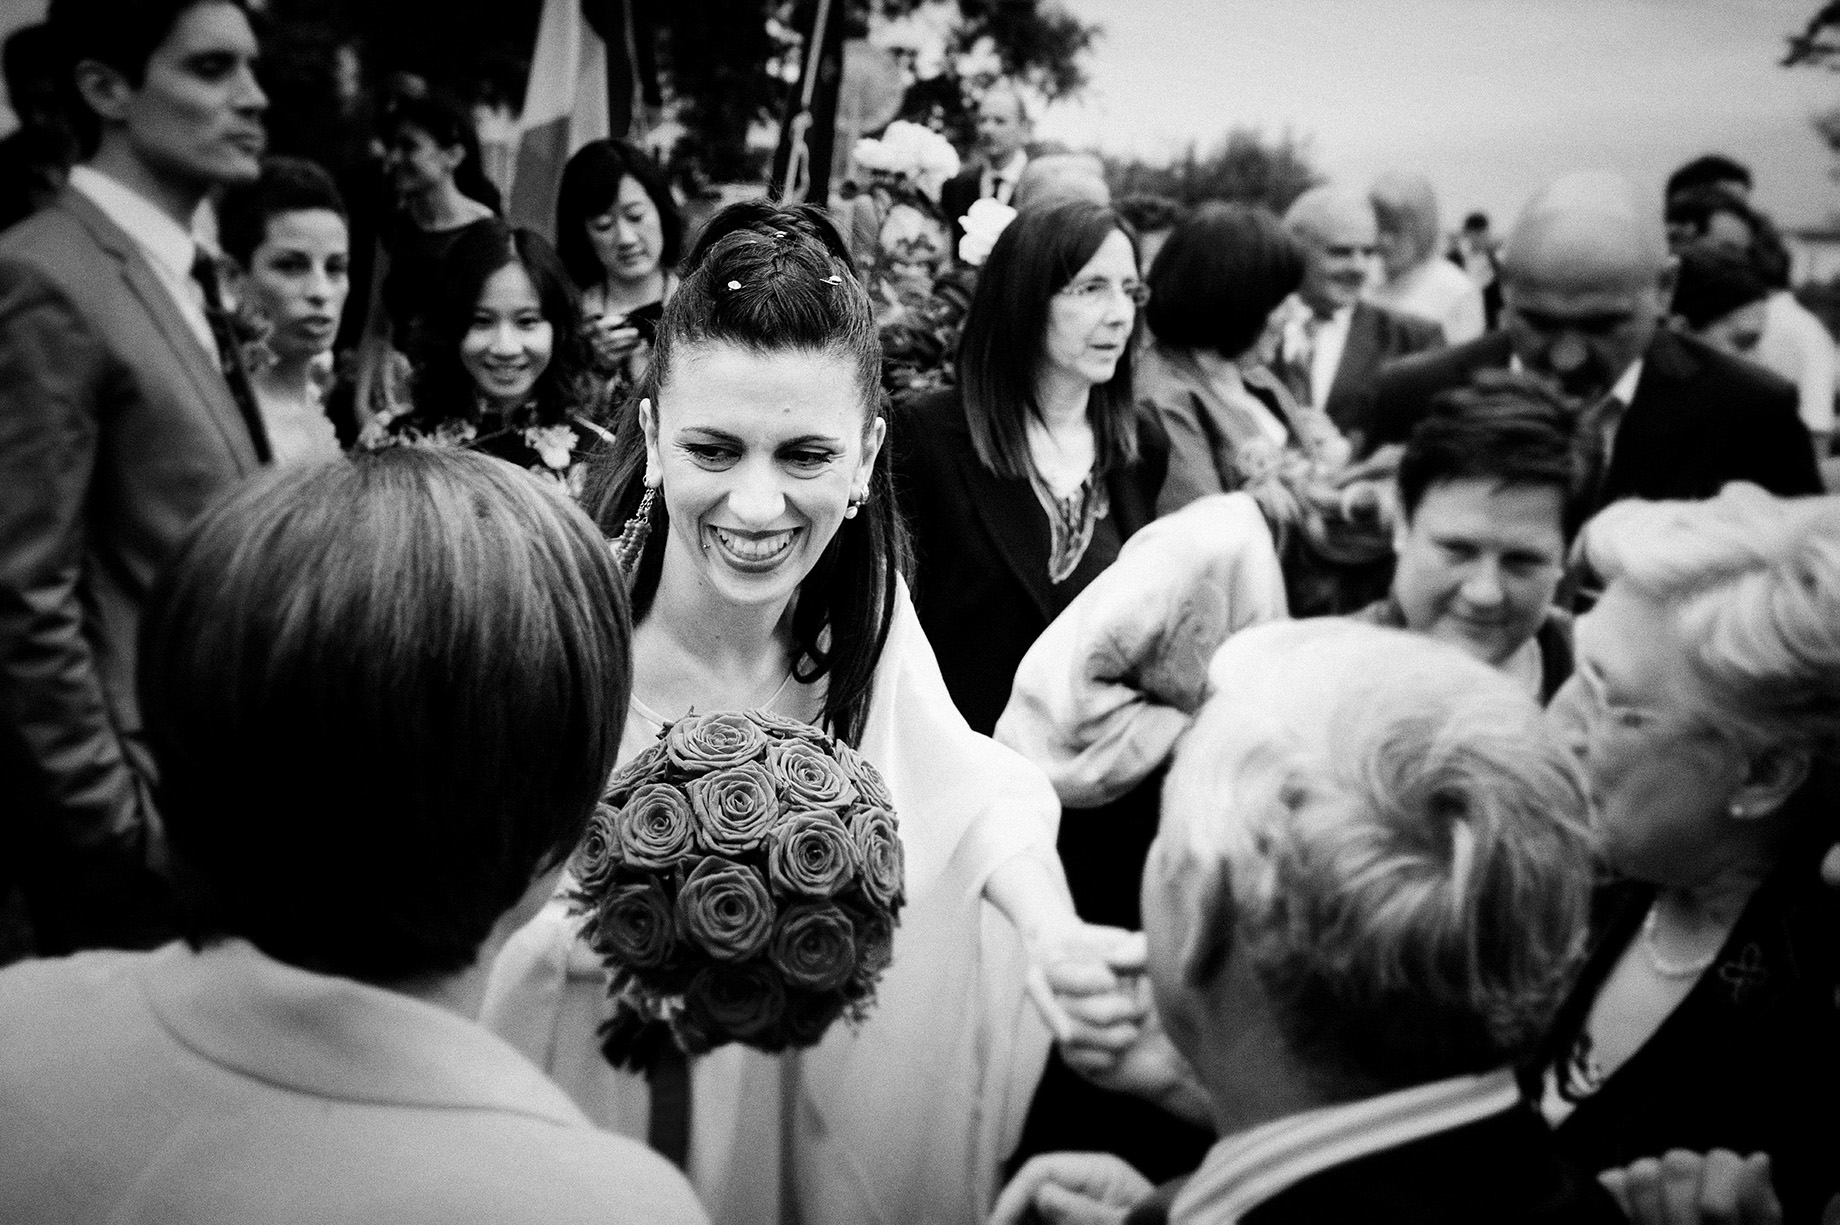 matrimonio in Abruzzo